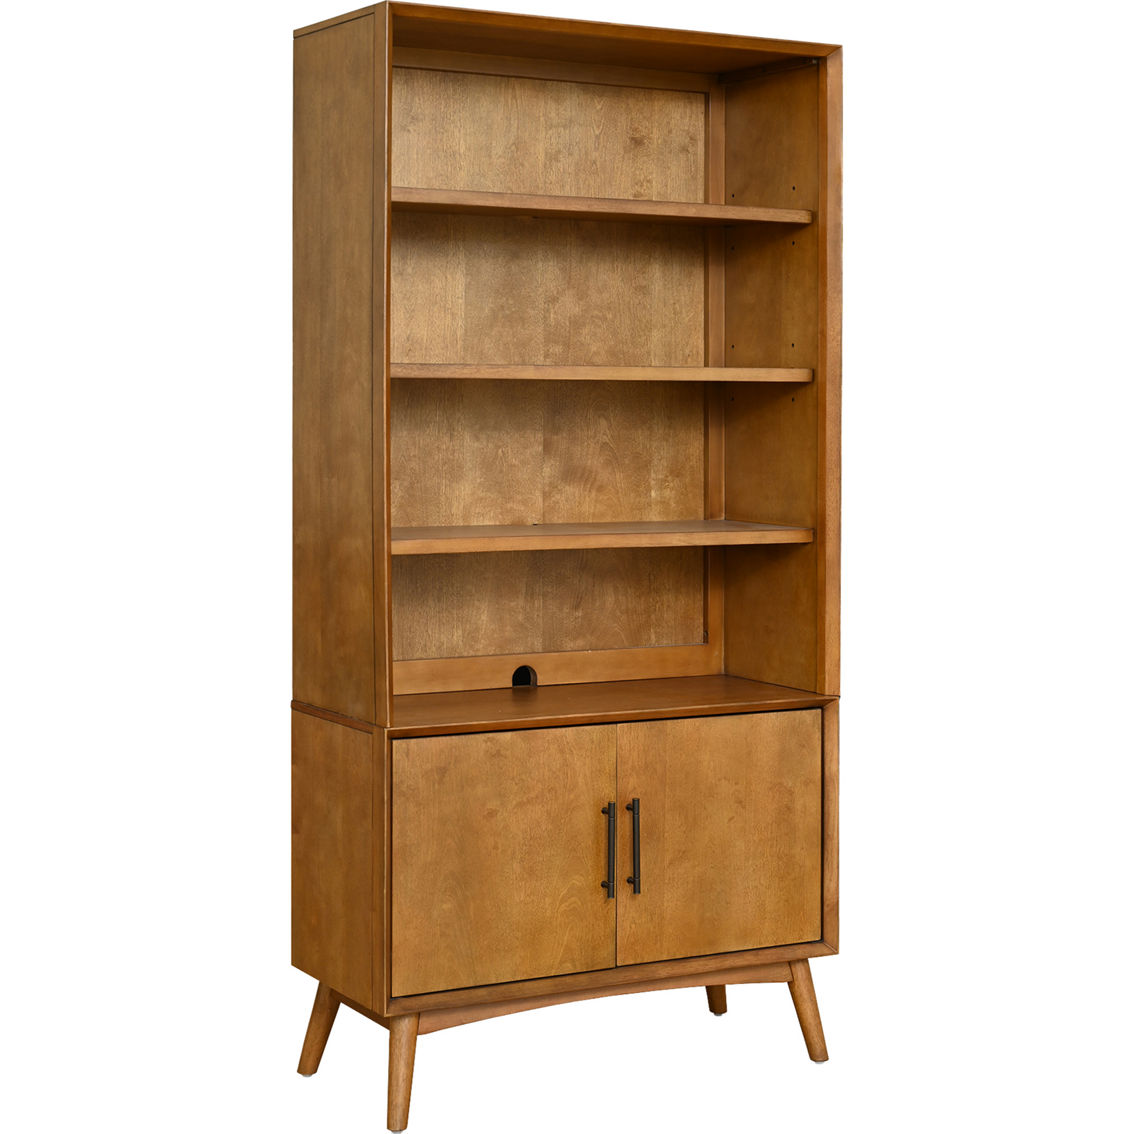 Abbyson Retro Mid-Century Light Brown Bookcase - Image 2 of 7